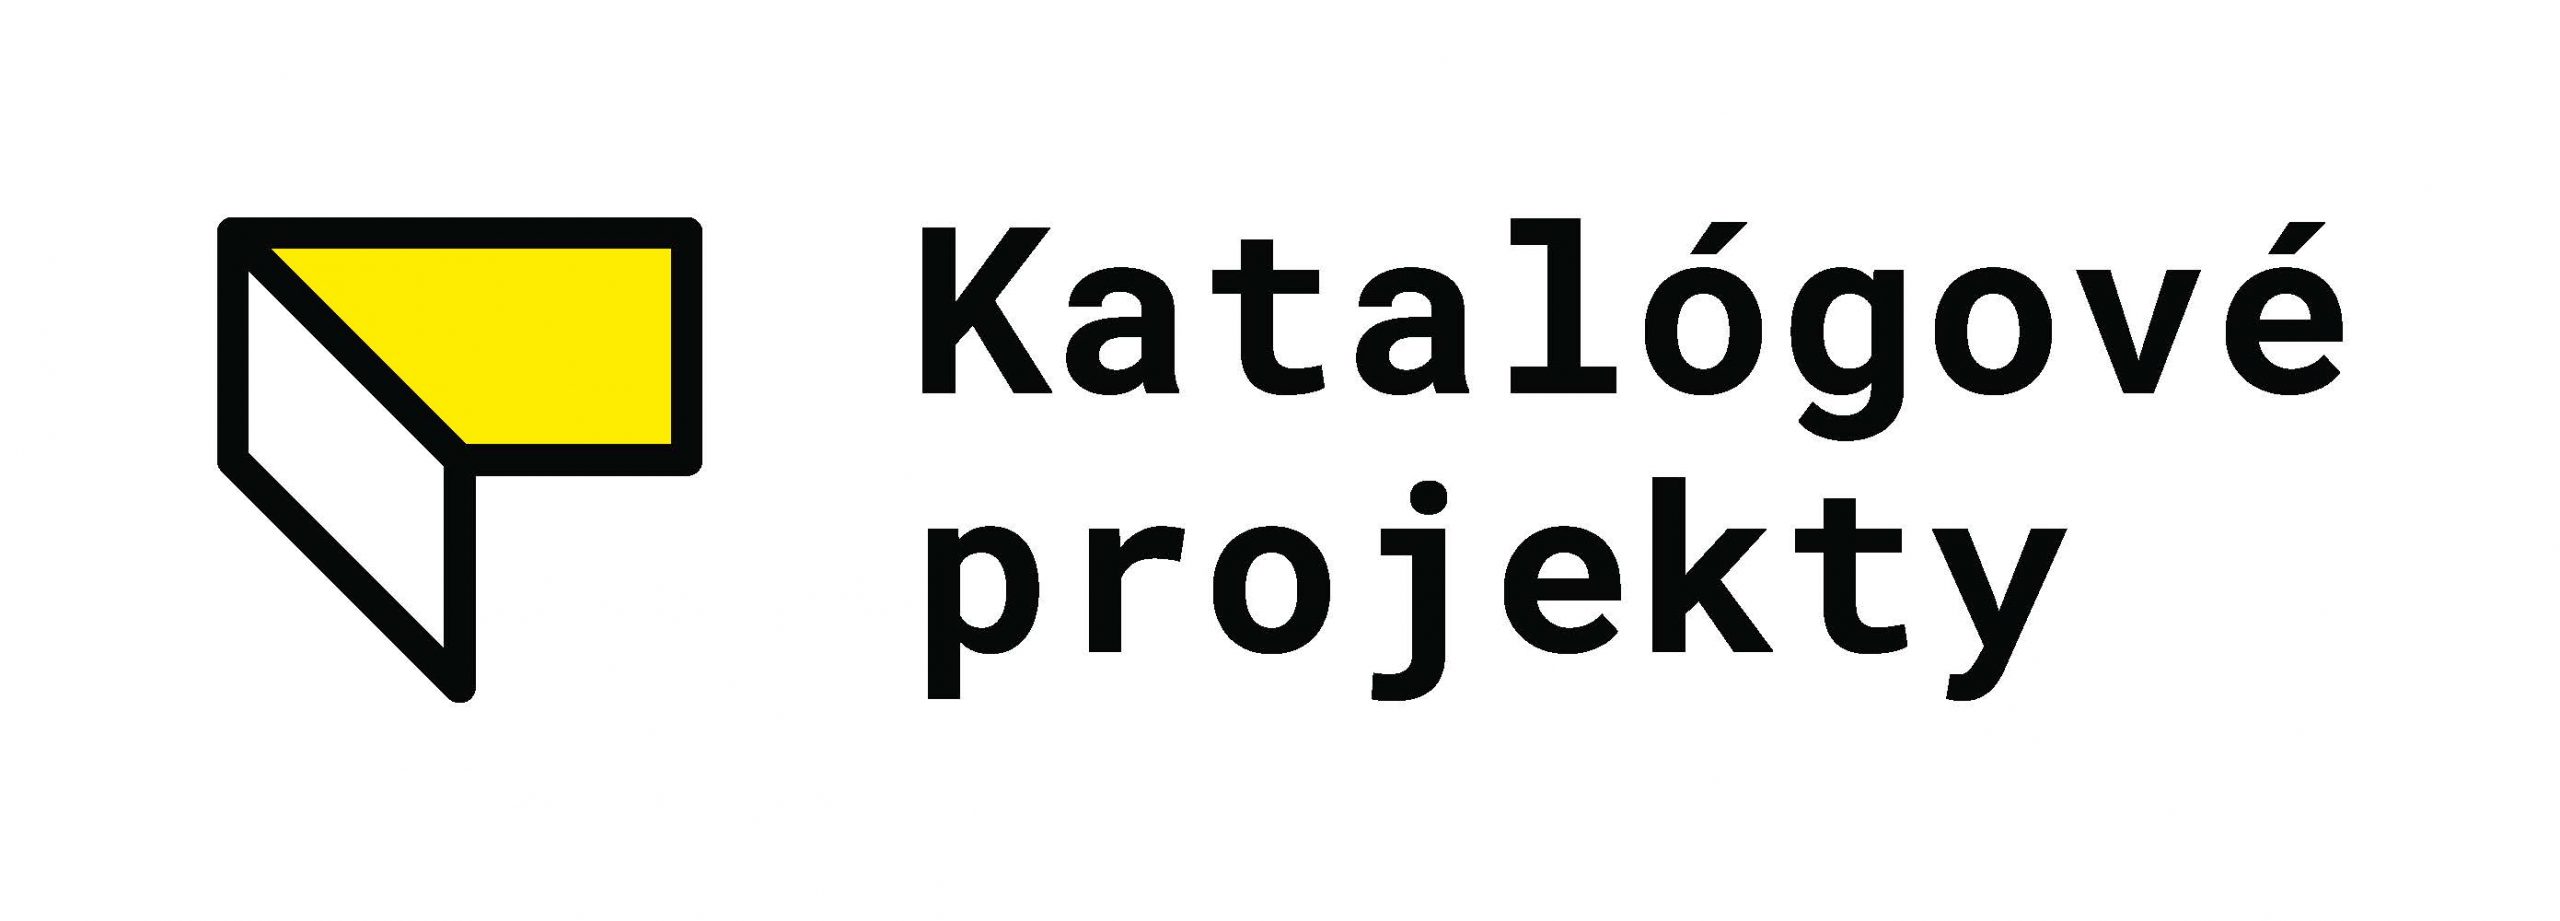 Katalógové projekty logo